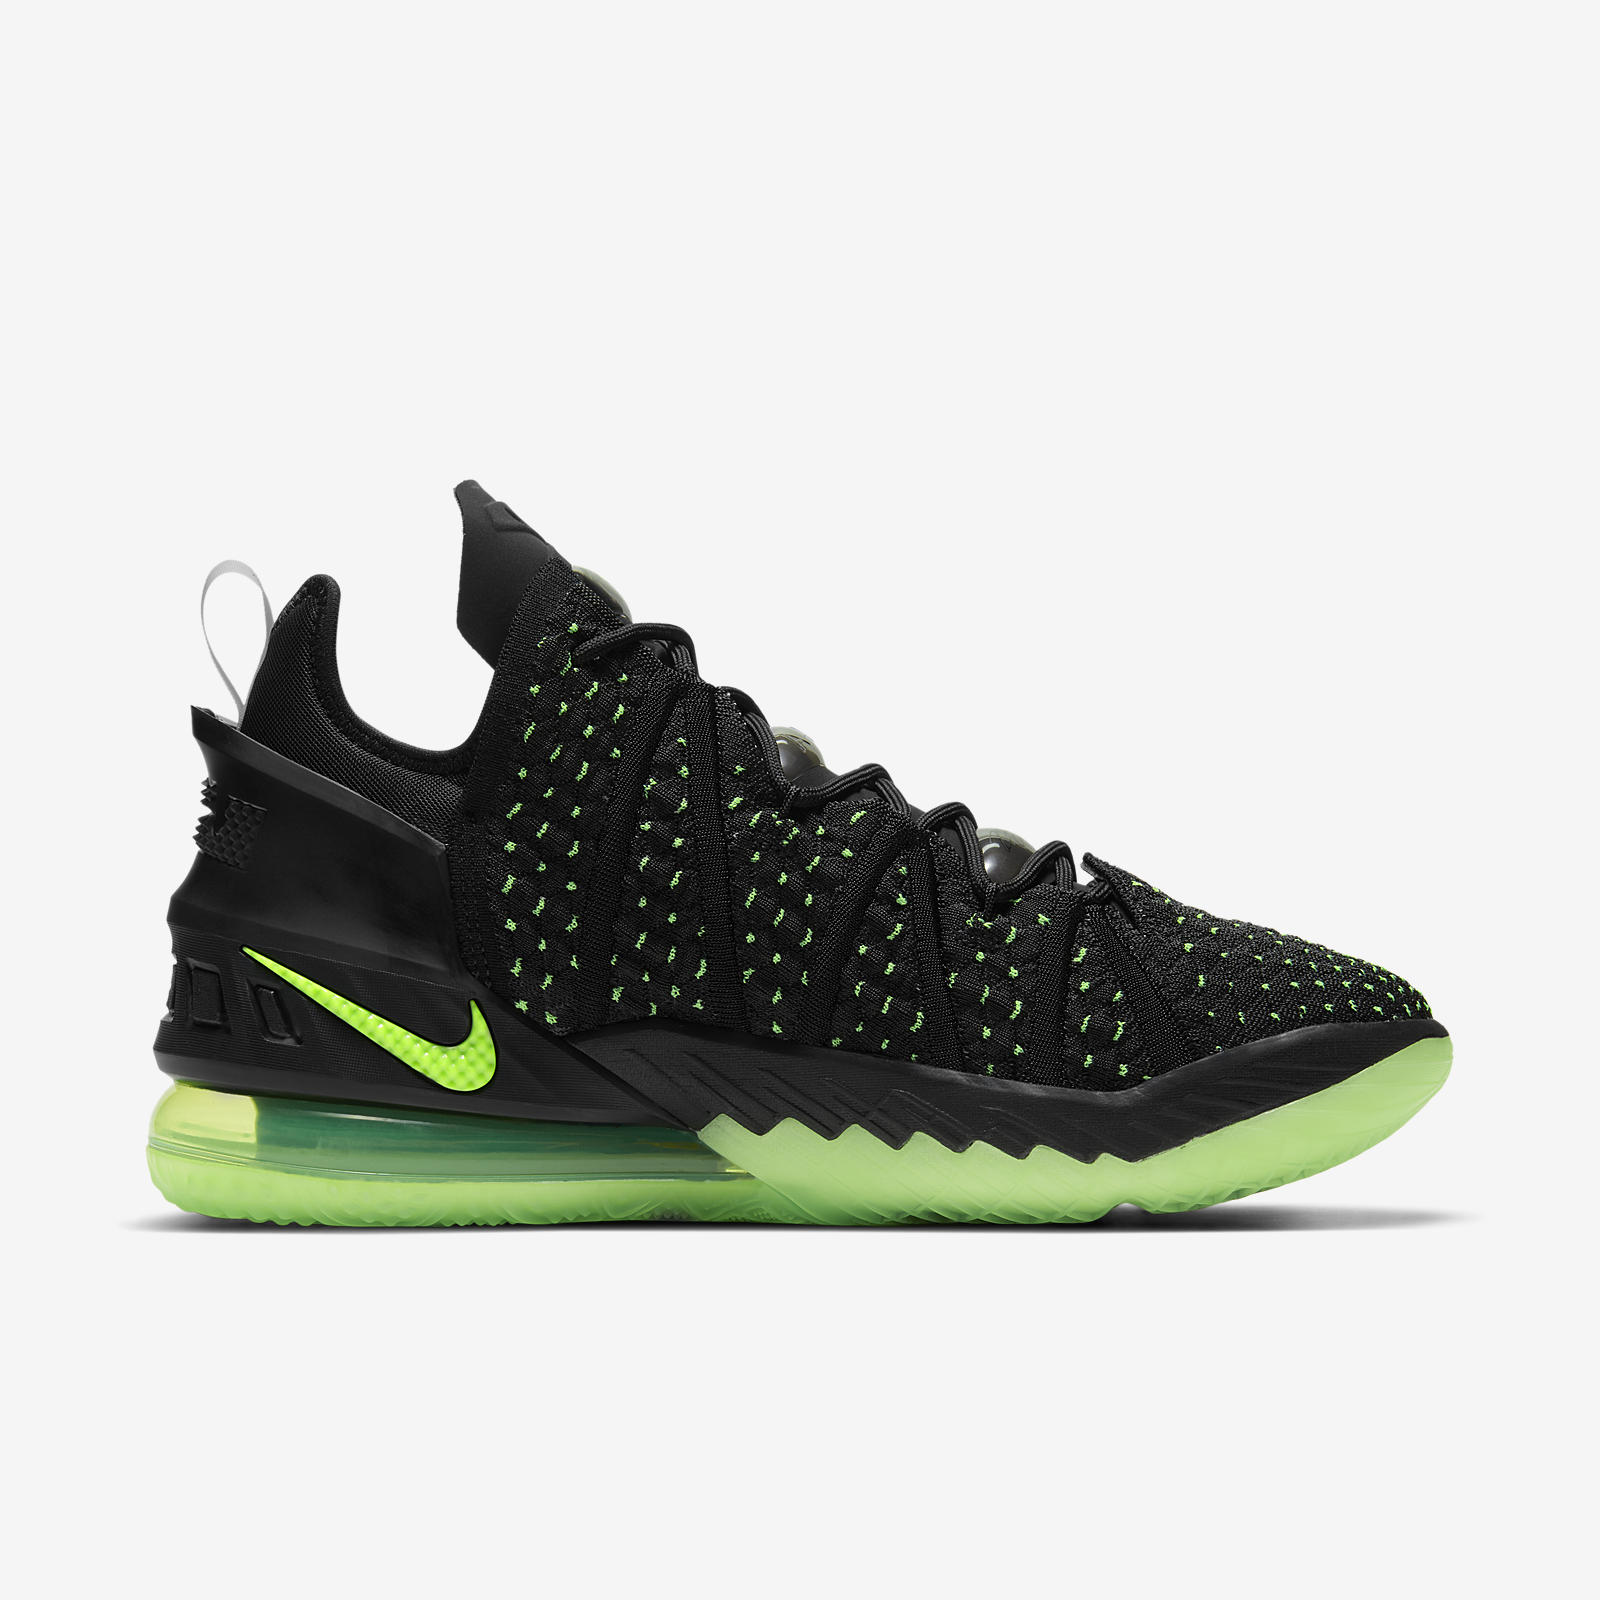 Nike LeBron 18
« Electric Green »